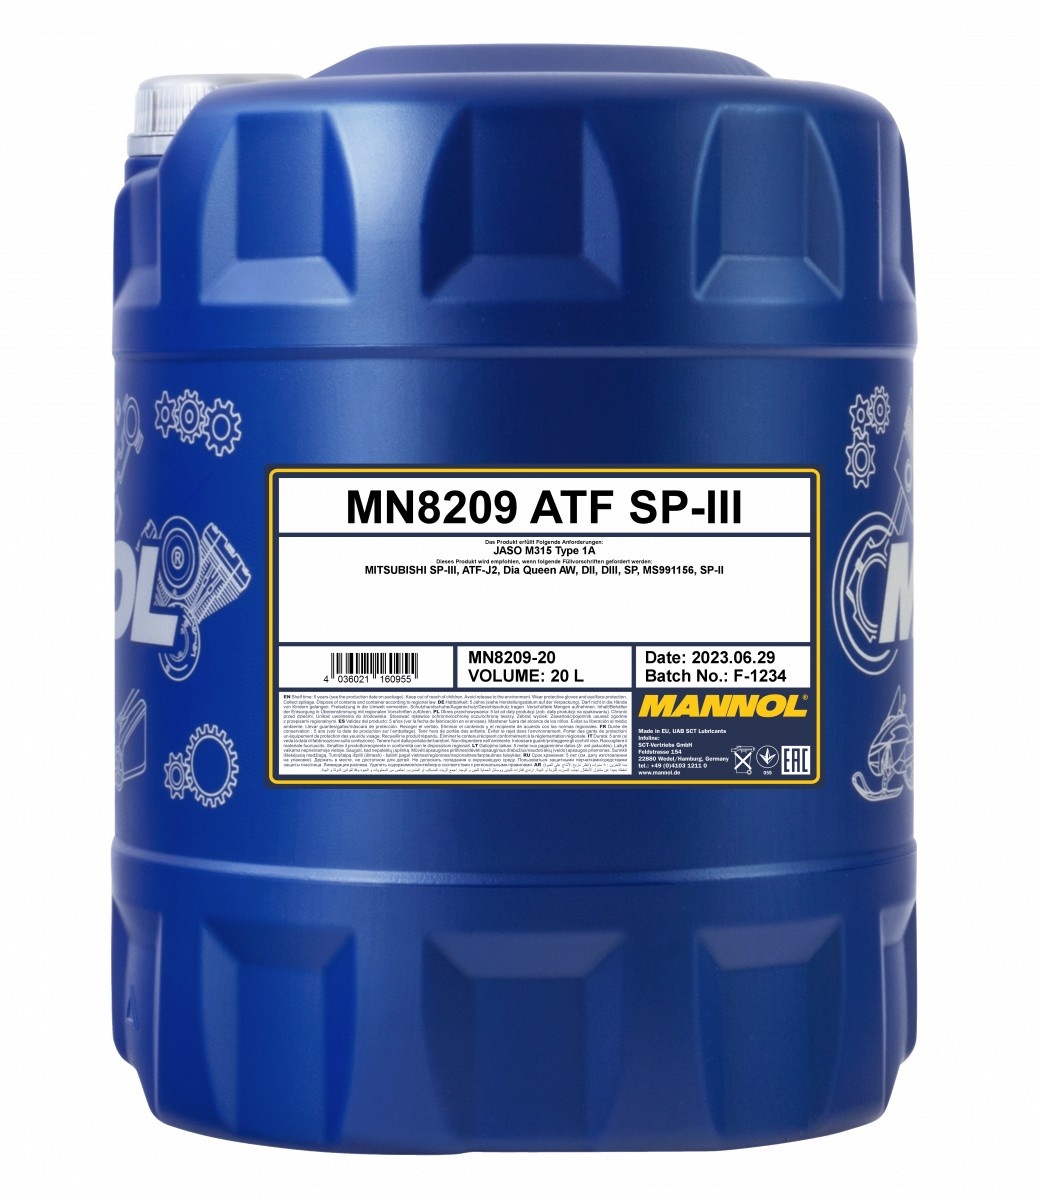 Трансмиссионное масло Mannol ATF SP-III 8209 20L